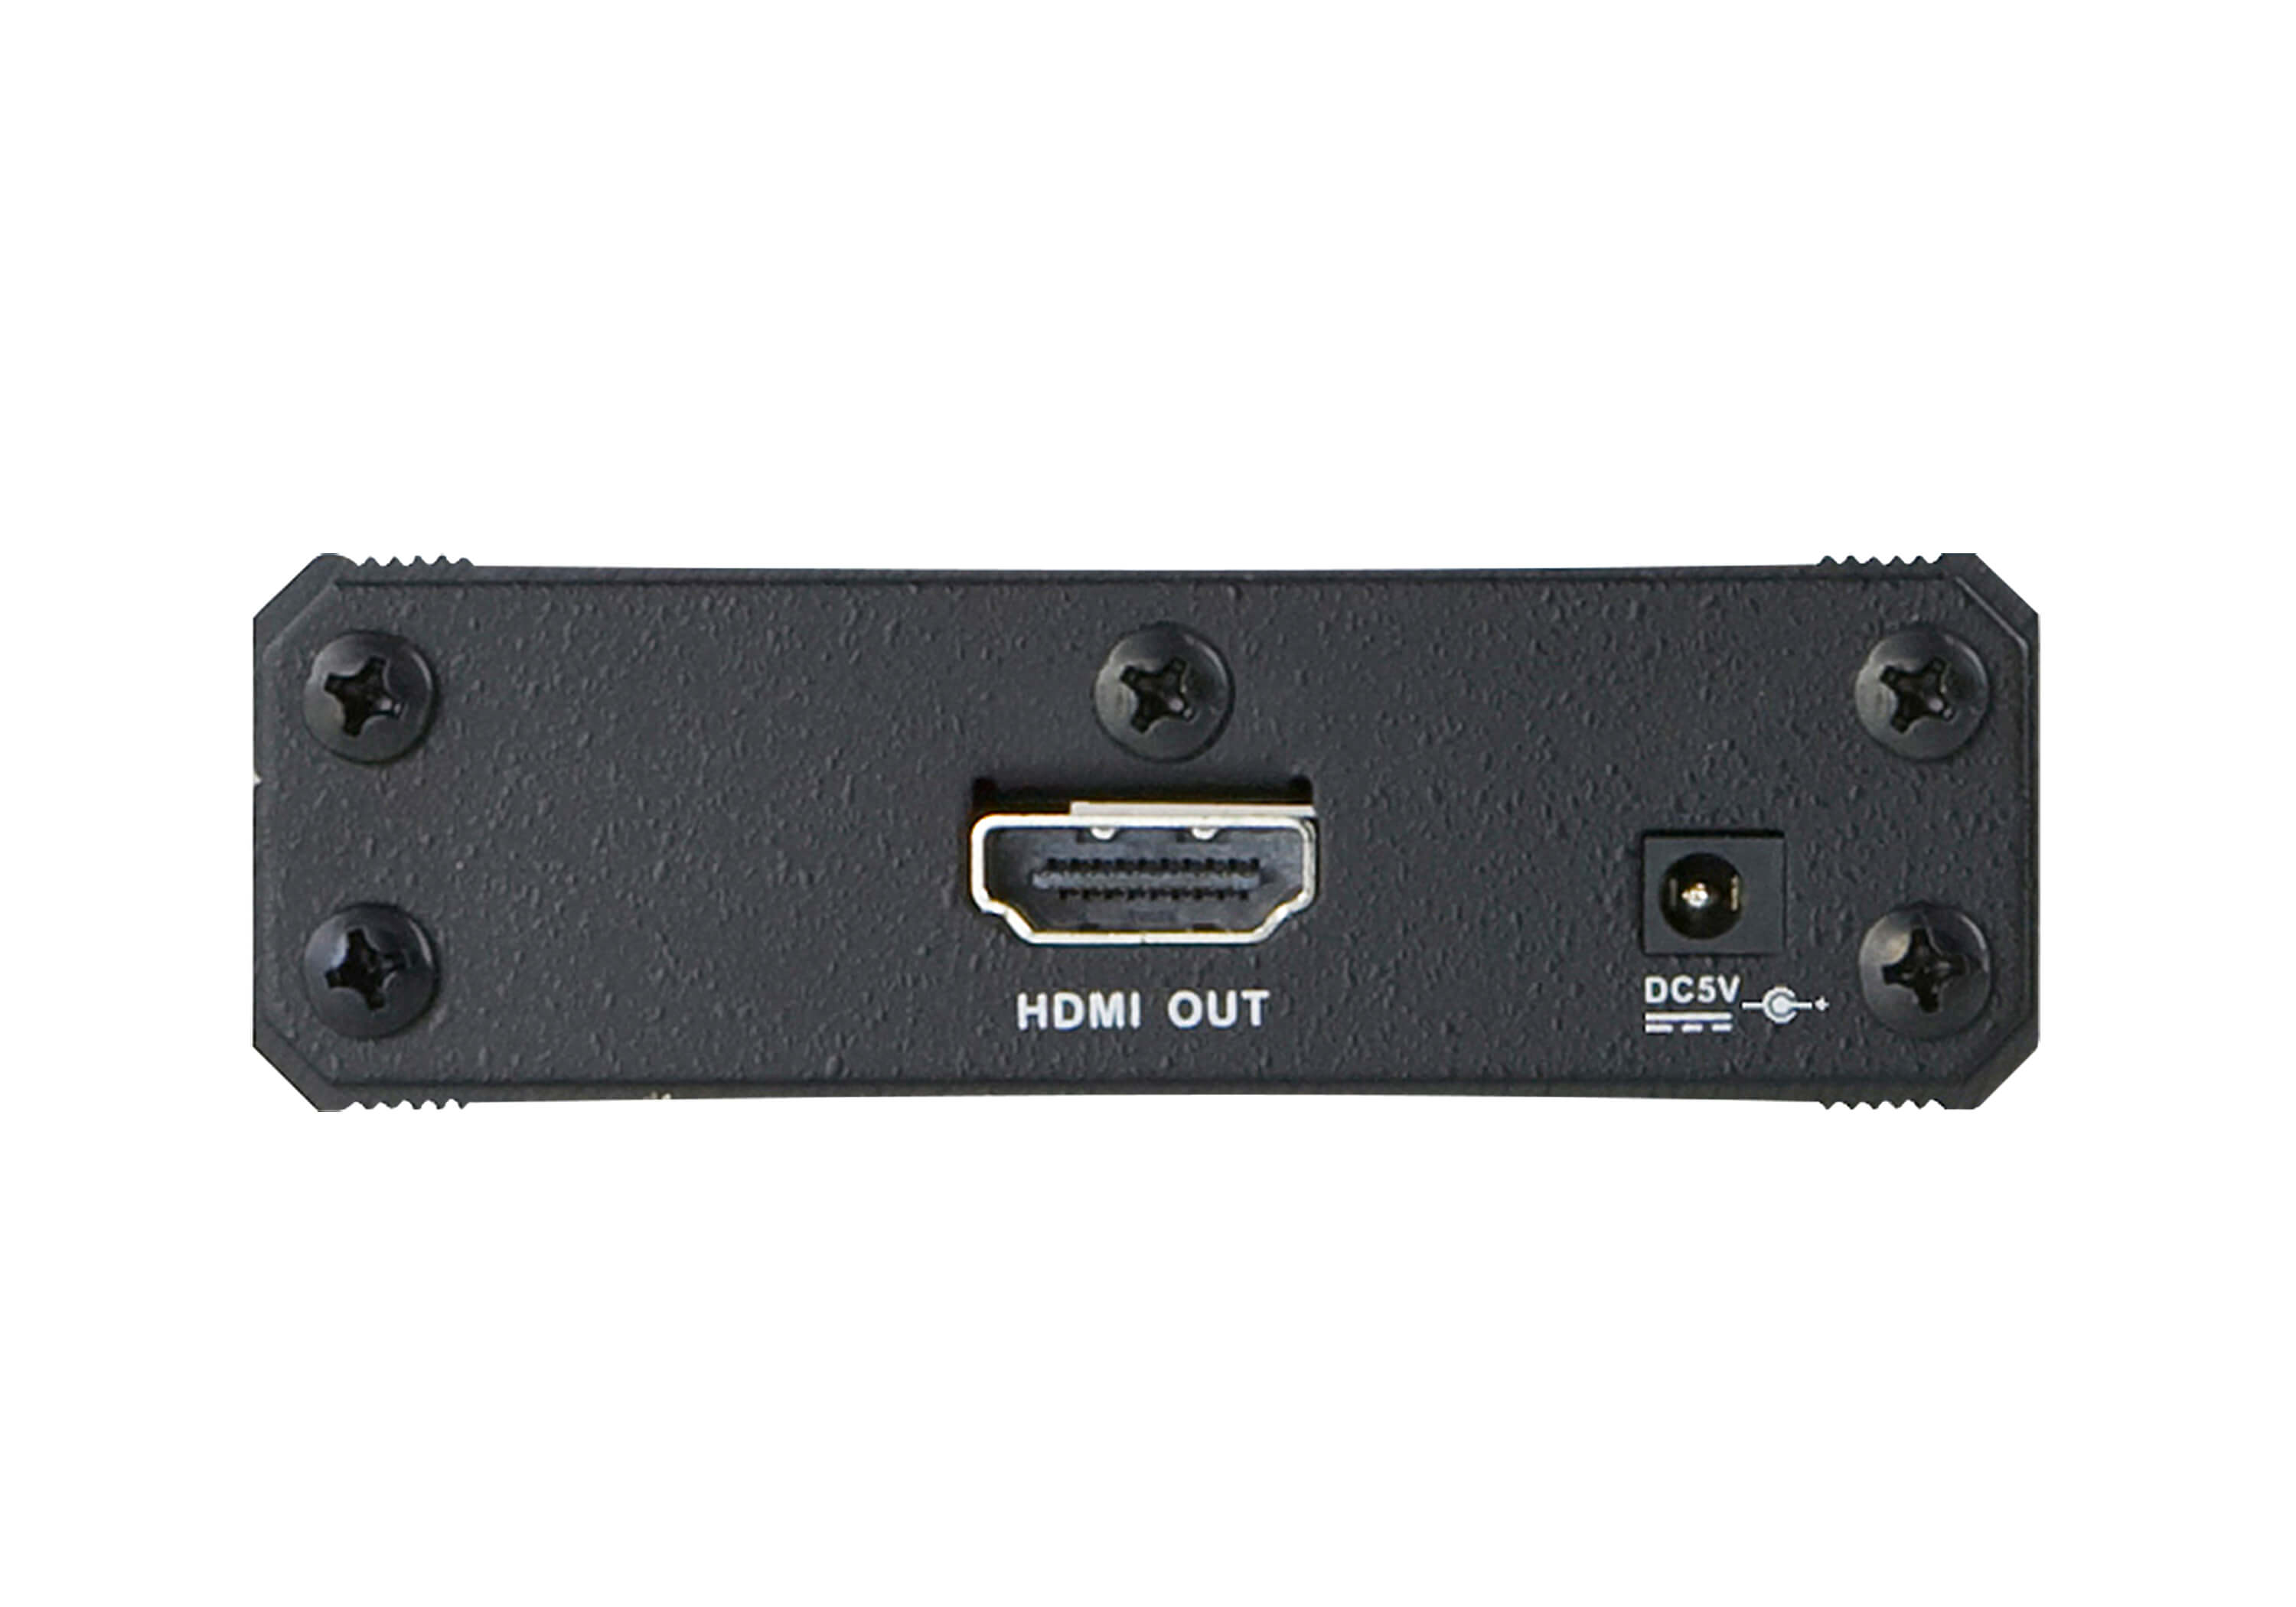 取寄 ATEN VC081A HDMI EDID保持器（4K60p対応）